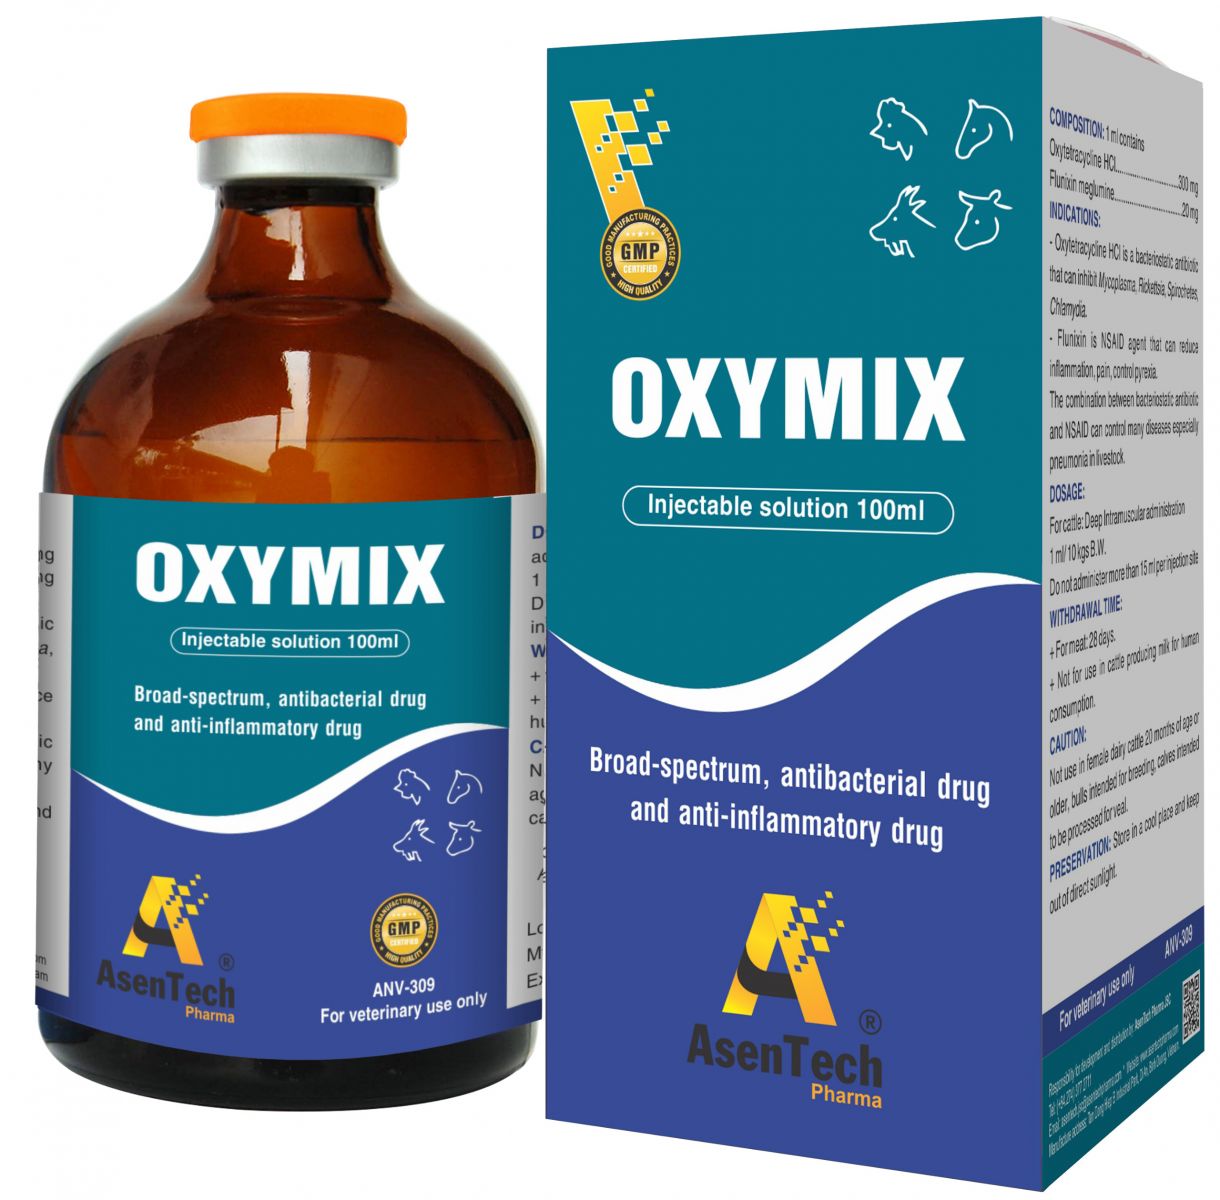 OXYMIX